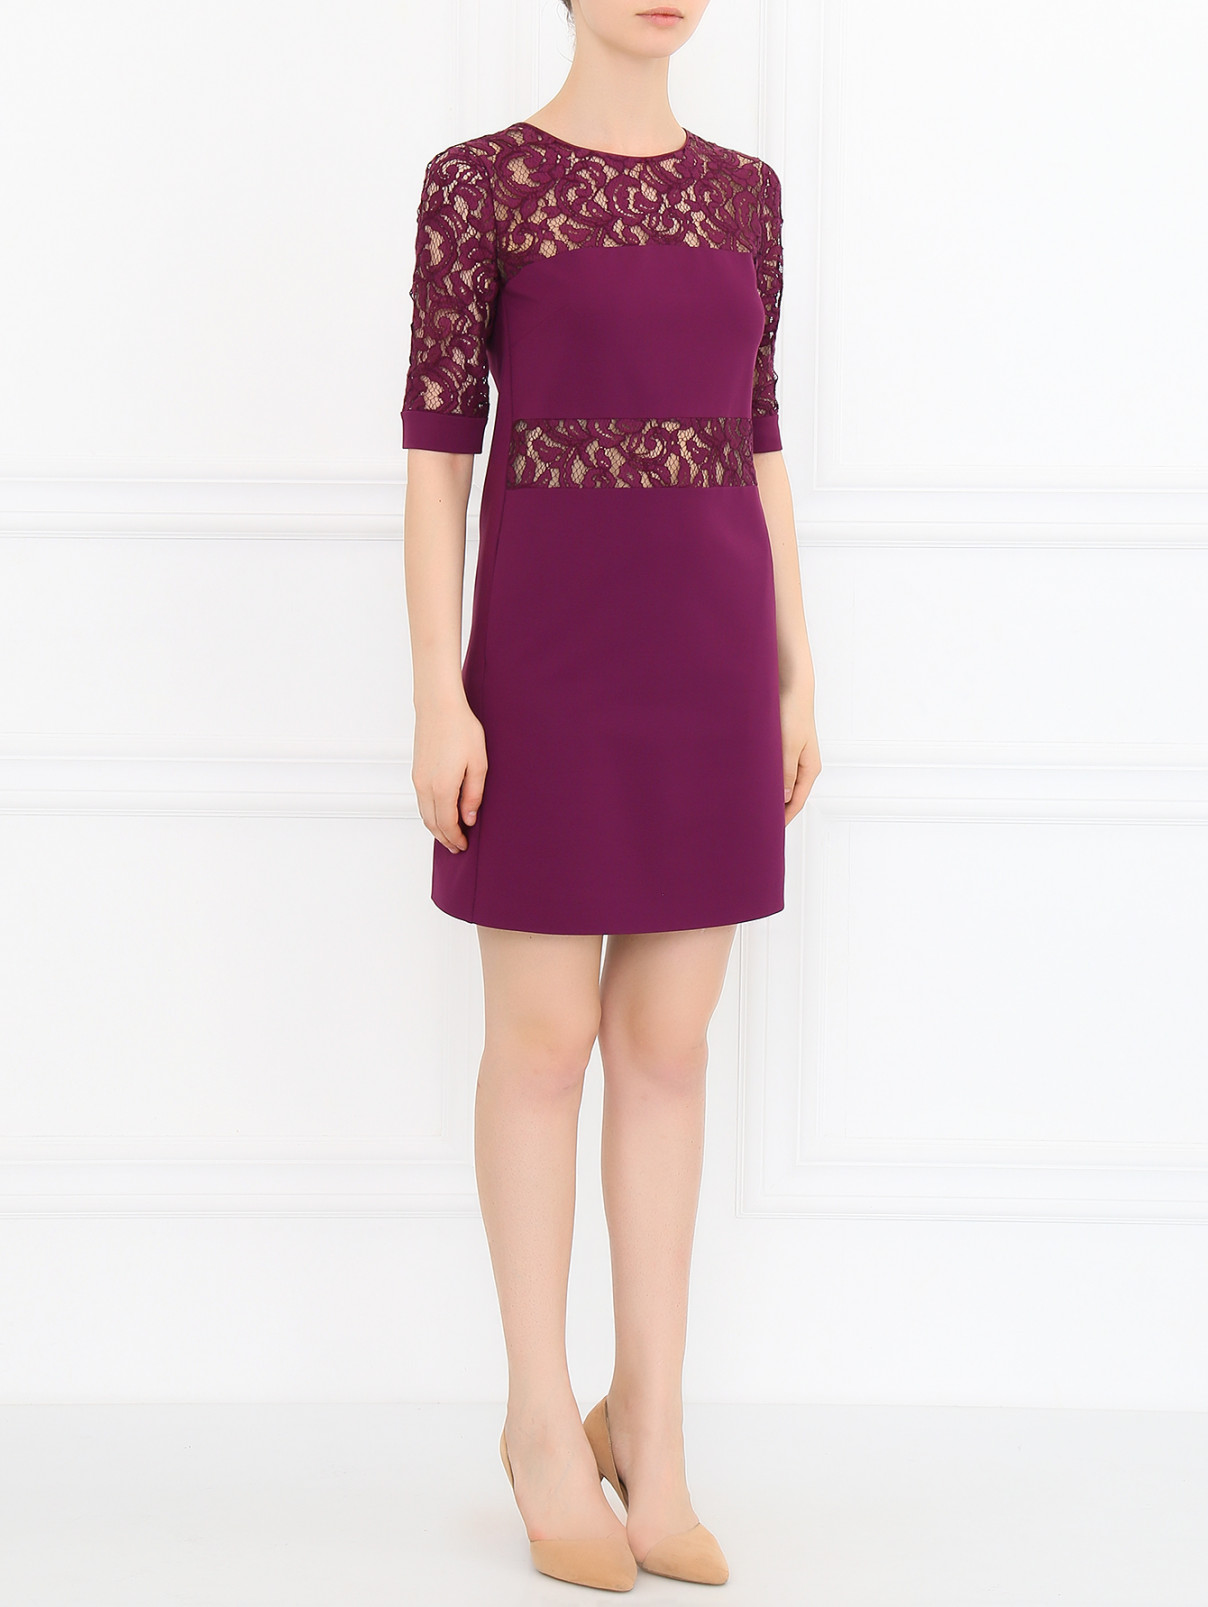 Платье-футляр с кружевными вставками Alberta Ferretti  –  Модель Общий вид  – Цвет:  Фиолетовый